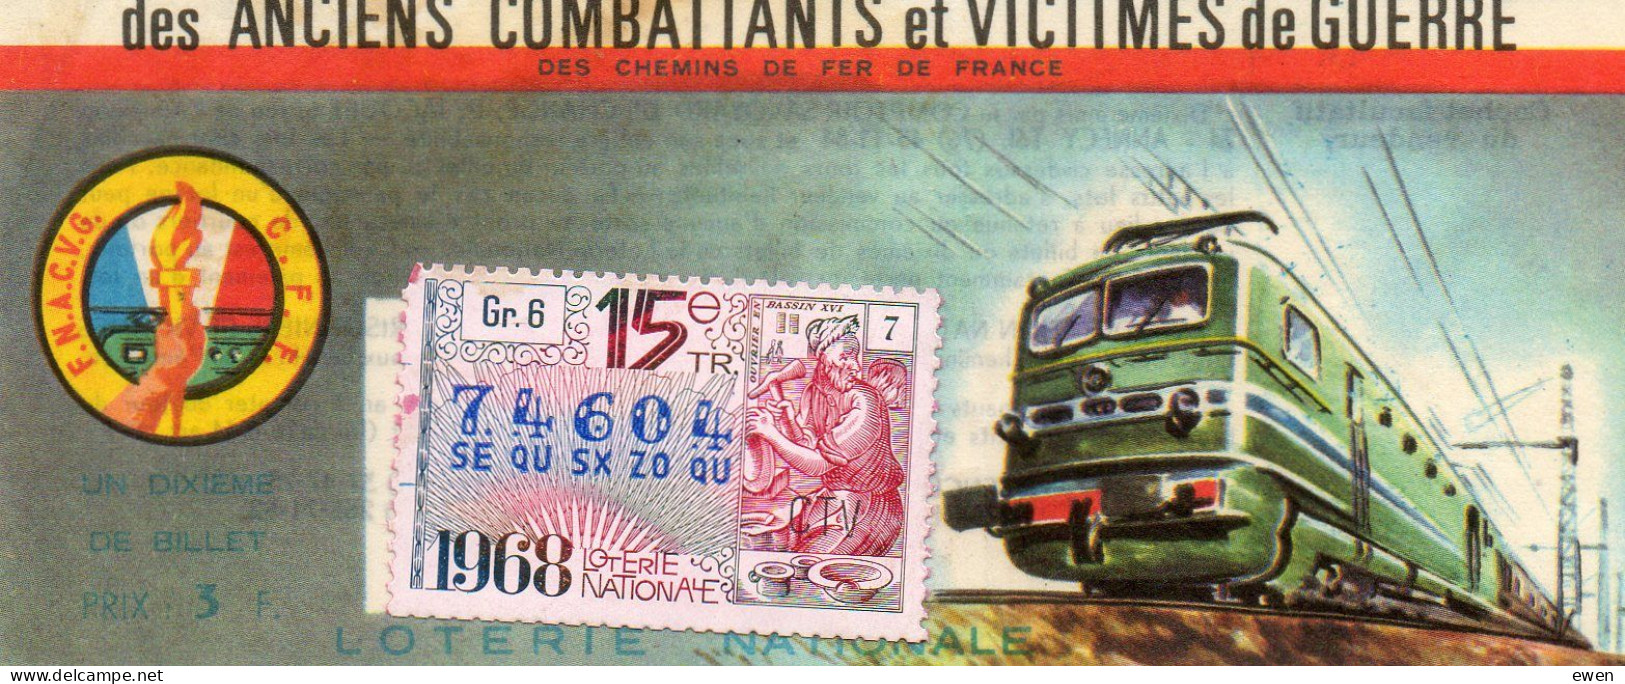 Billet Loterie Nationale Pour Victimes De Guerre. Dessin De Locomotive. 1968. - Billetes De Lotería